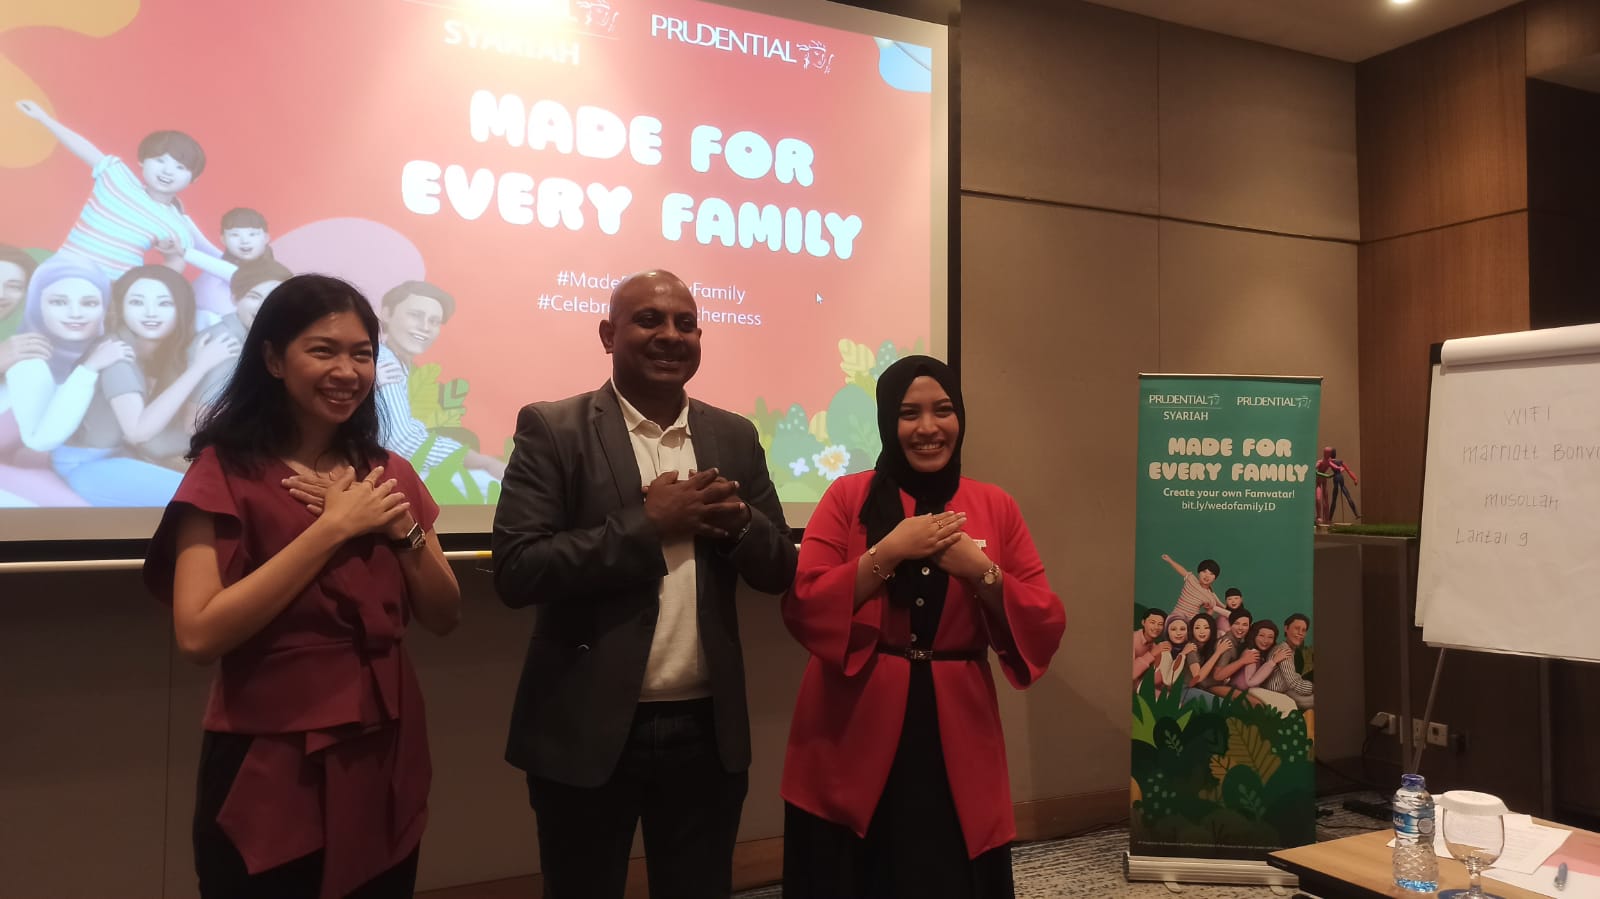 Prudential Memperluas Akses Perlindungan bagi Keluarga, Indonesia melalui Kampanye #MadeForEveryFamily